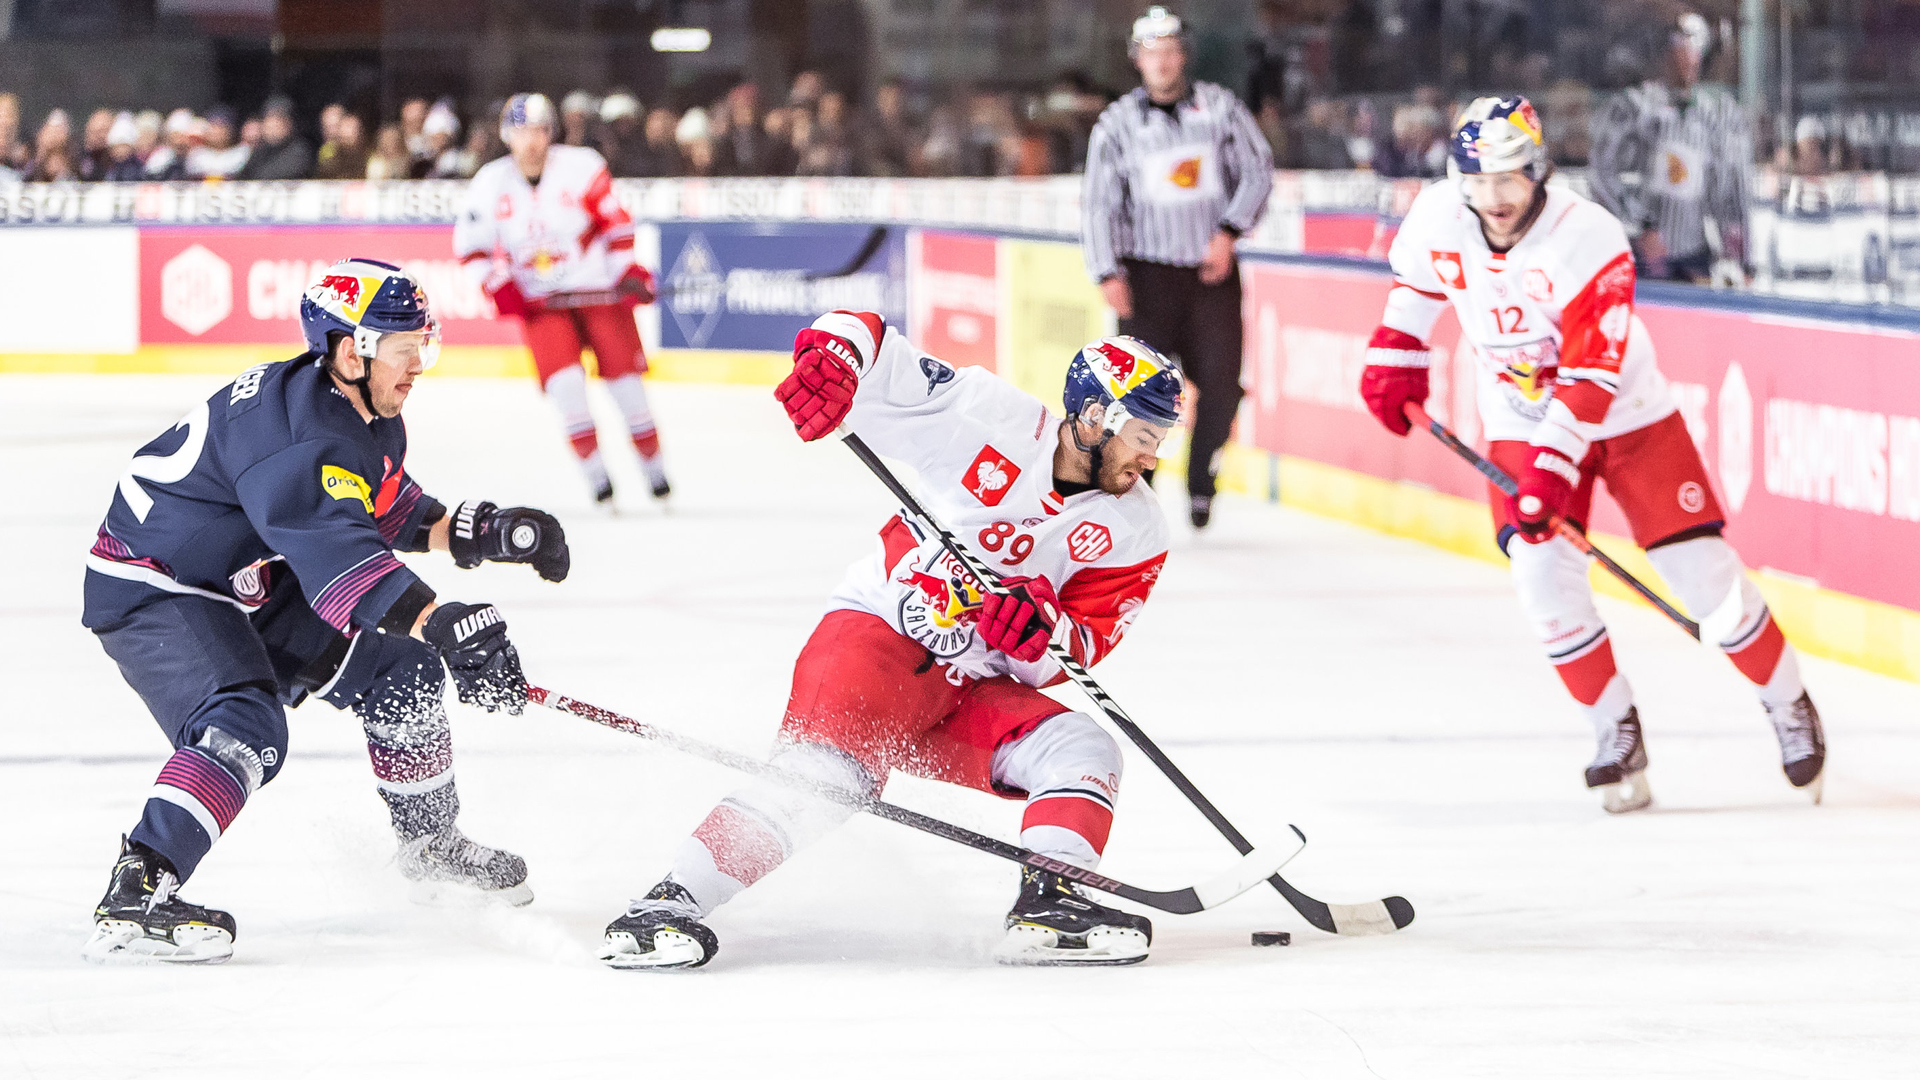 Spielszene des Eishockeyspiels zwischen RB Salzburg und dem EHC München | Bildquelle: dpa